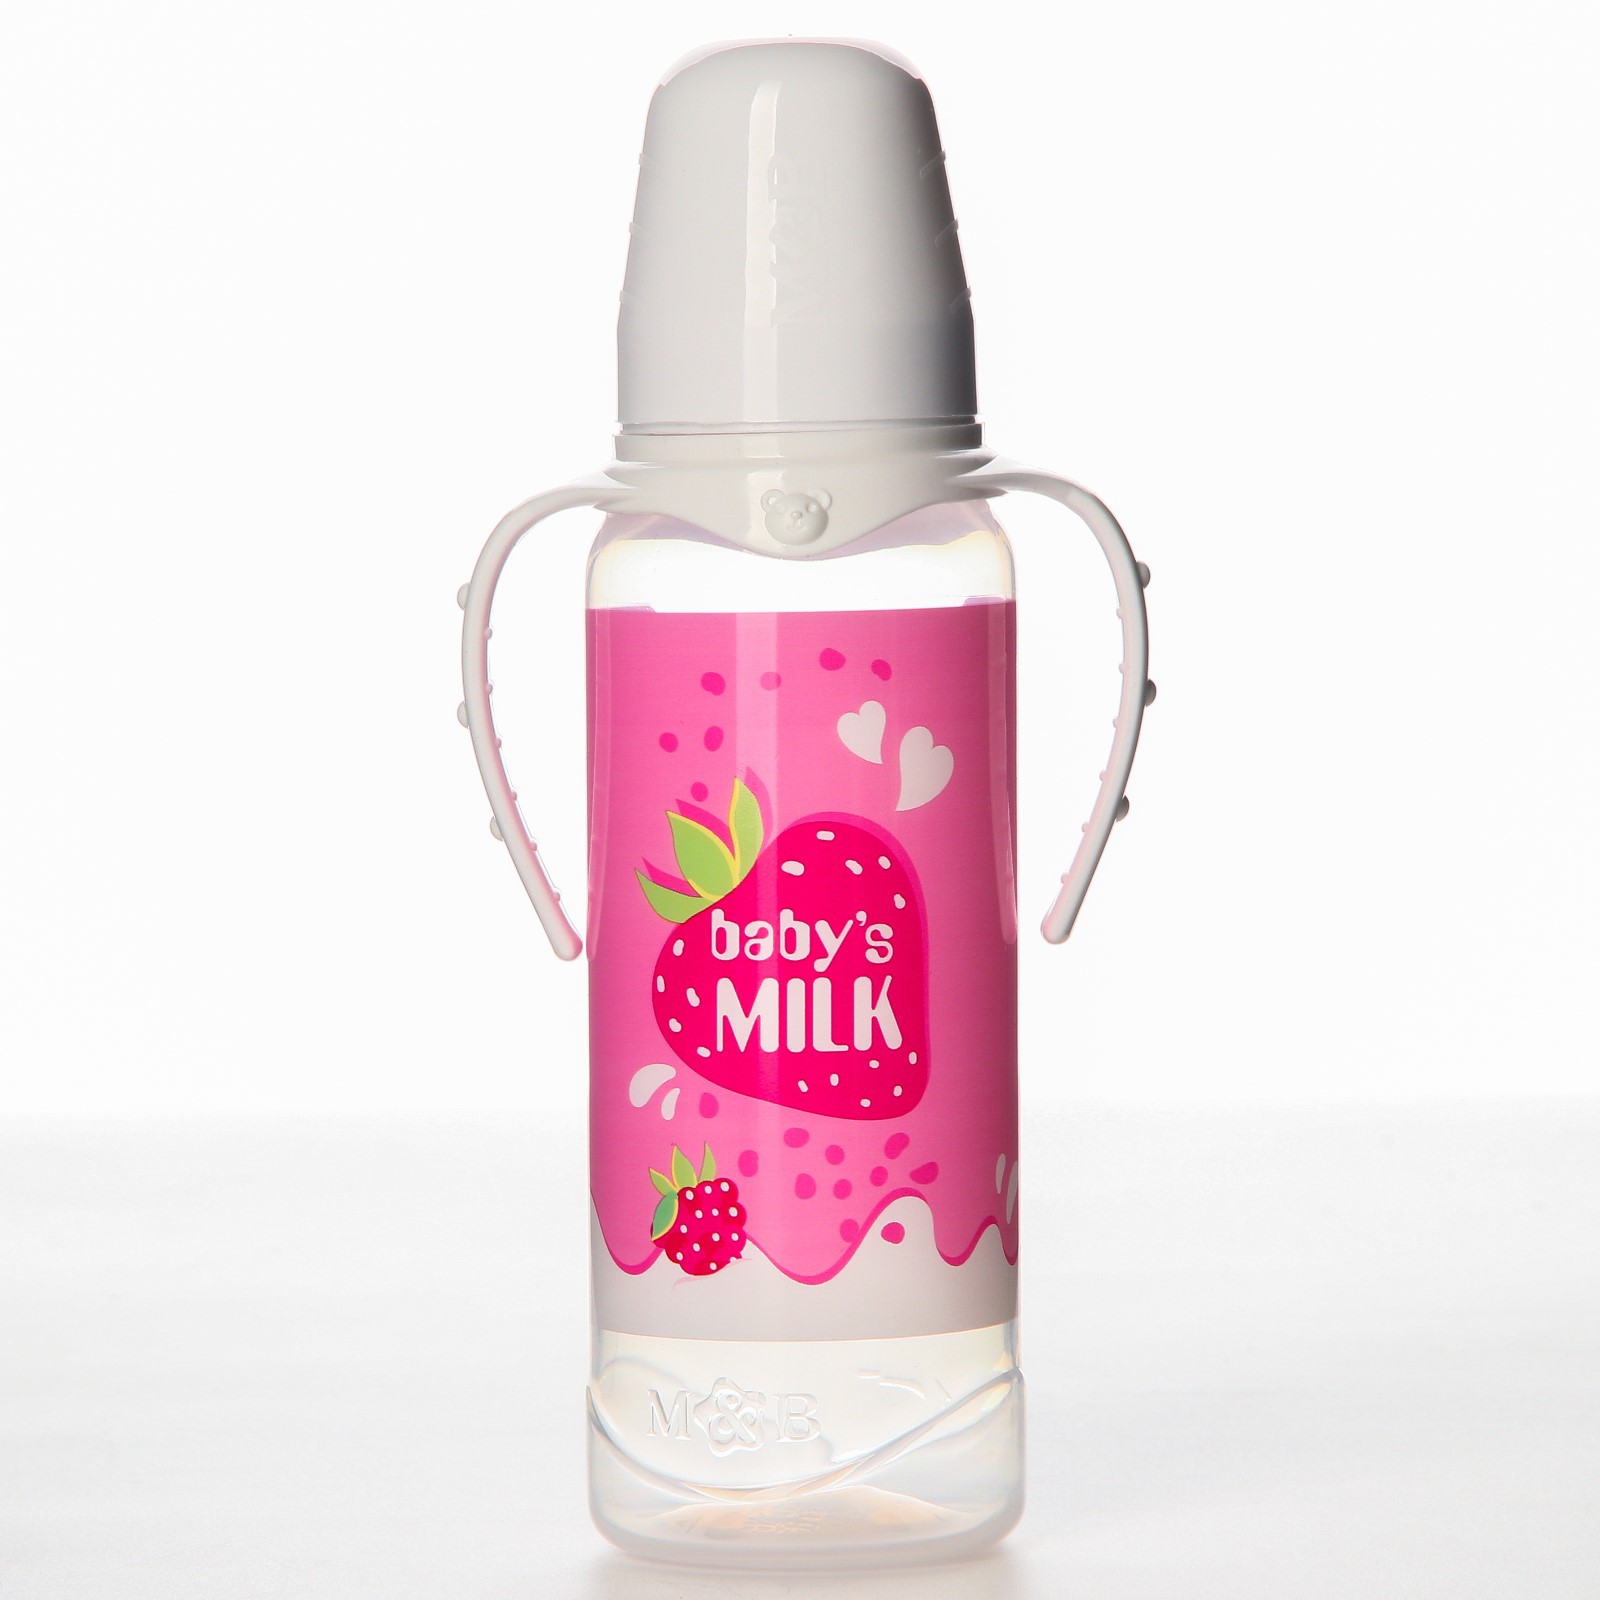 Бутылочка Mum and Baby для кормления «Клубничное молоко» 250 мл цилиндр с ручками - фото 1